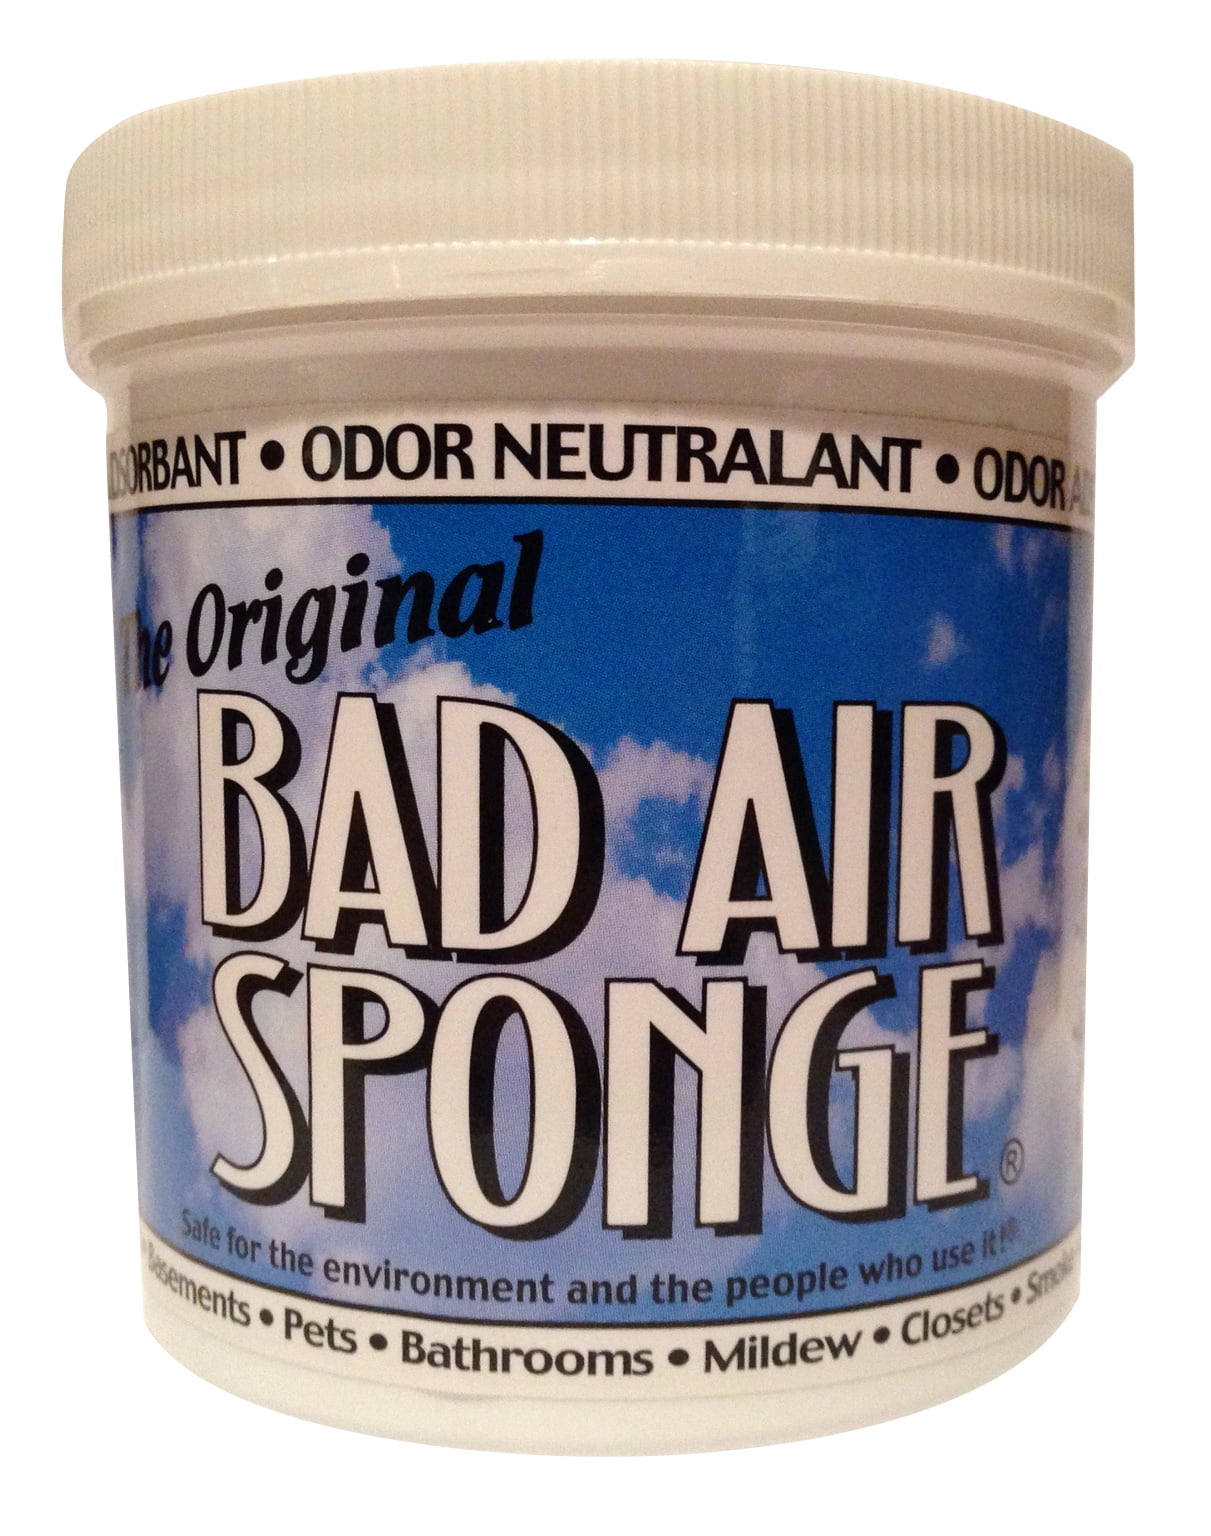 Bad air sponge 21